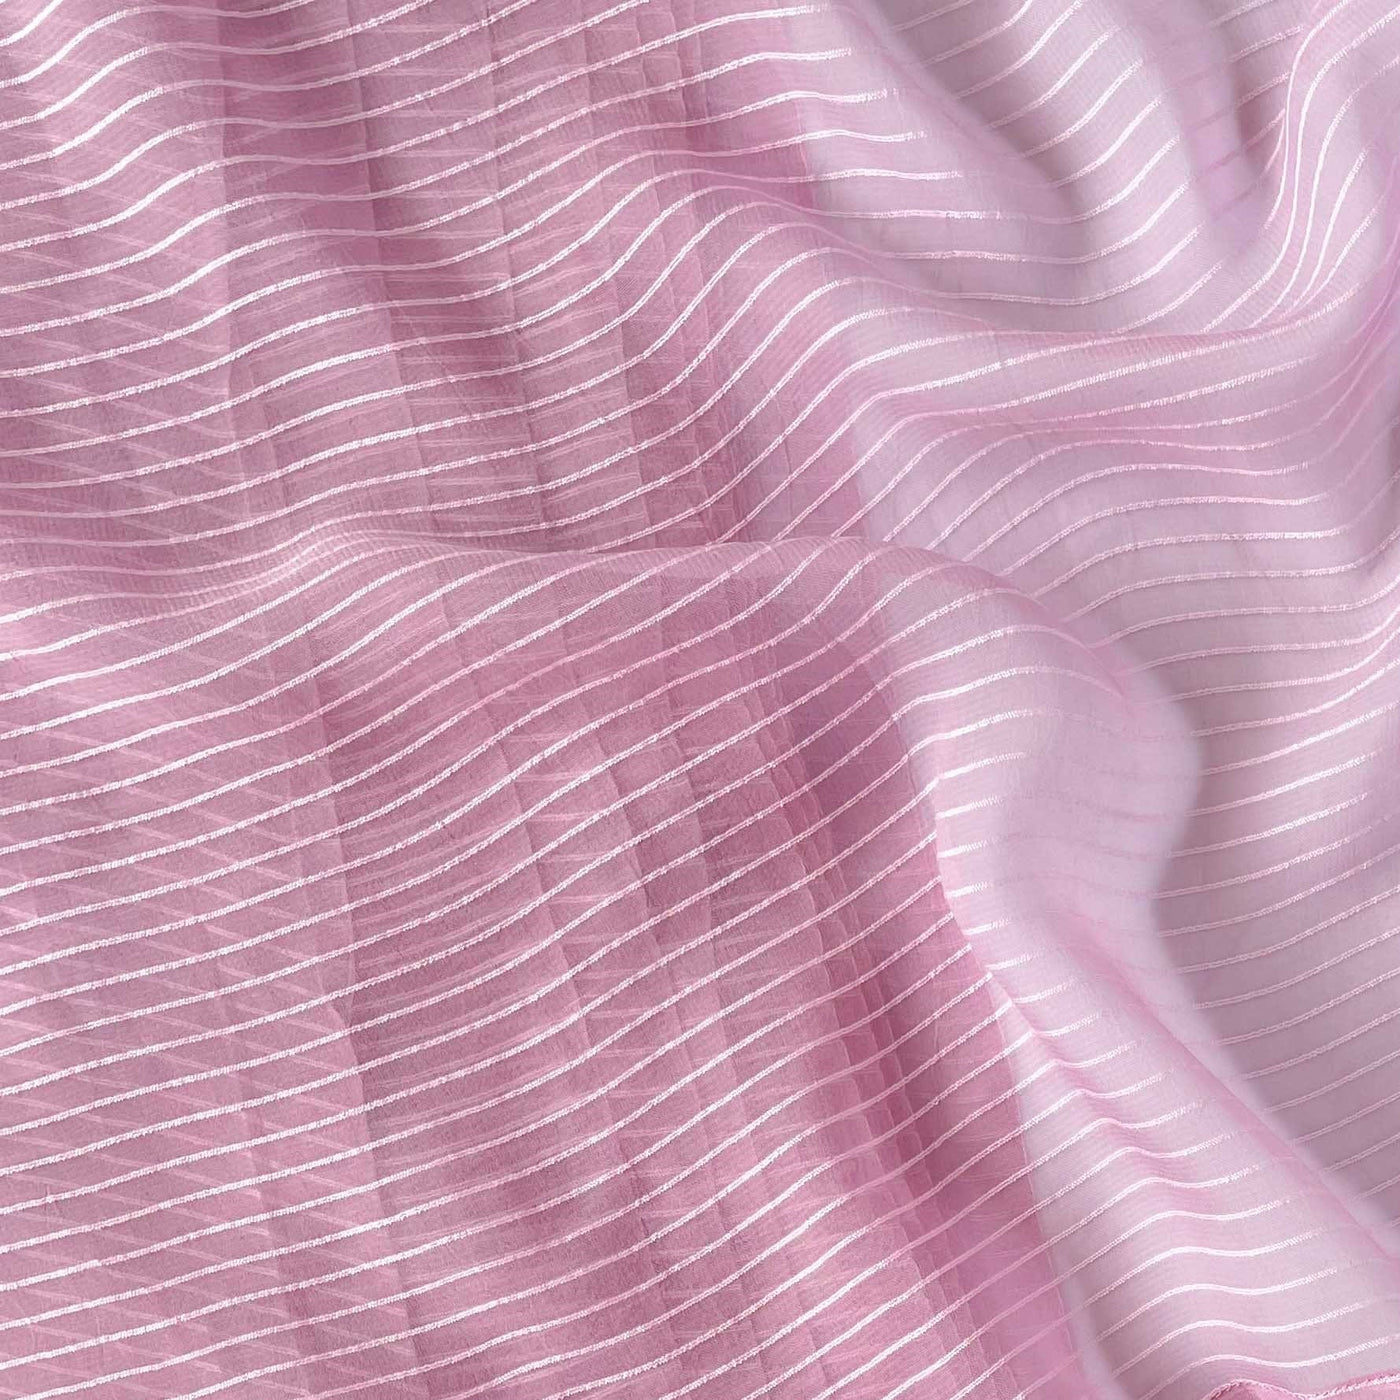 Georgette Saree Cut Piece (CUT PIECE) Soft Lilac Mini Stripes Woven Pure Georgette Fabric (Width 44 Inches)